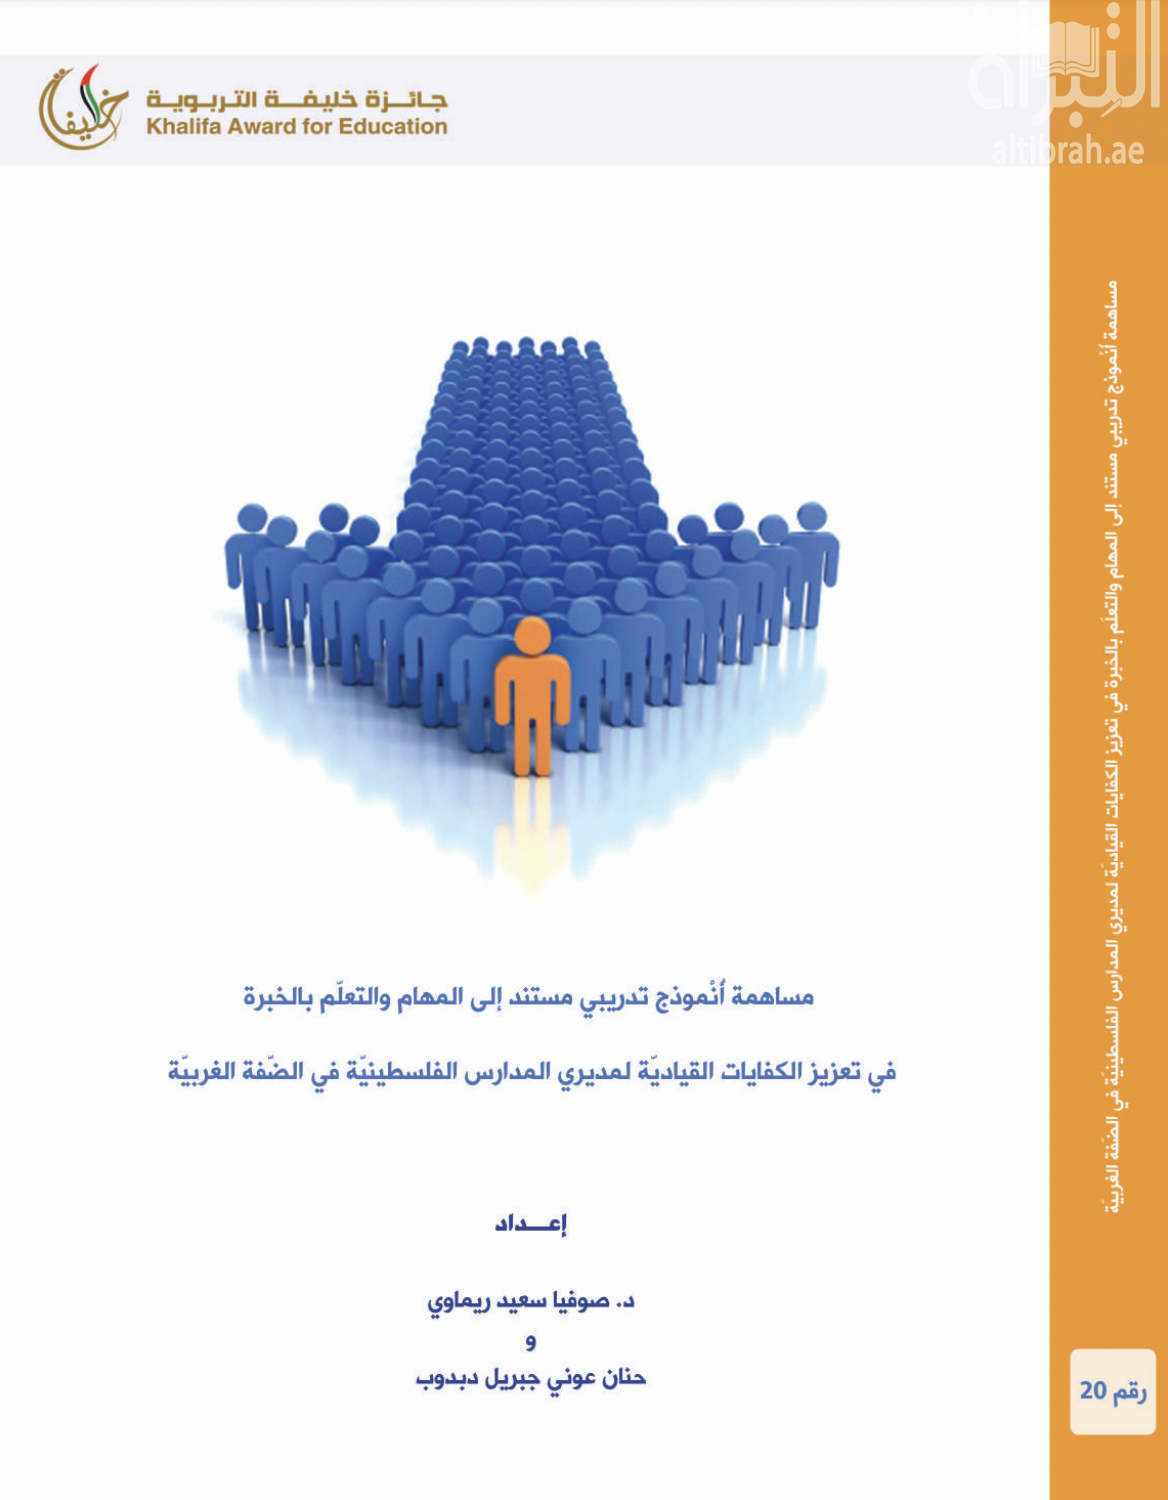 غلاف كتاب مساهمة أنموذج تدريبي مستند إلى المهام والتعلم بالخبرة في تعزيز الكفايات القيادية لمديري المدارس الفلسطينية في الضفة الغربية